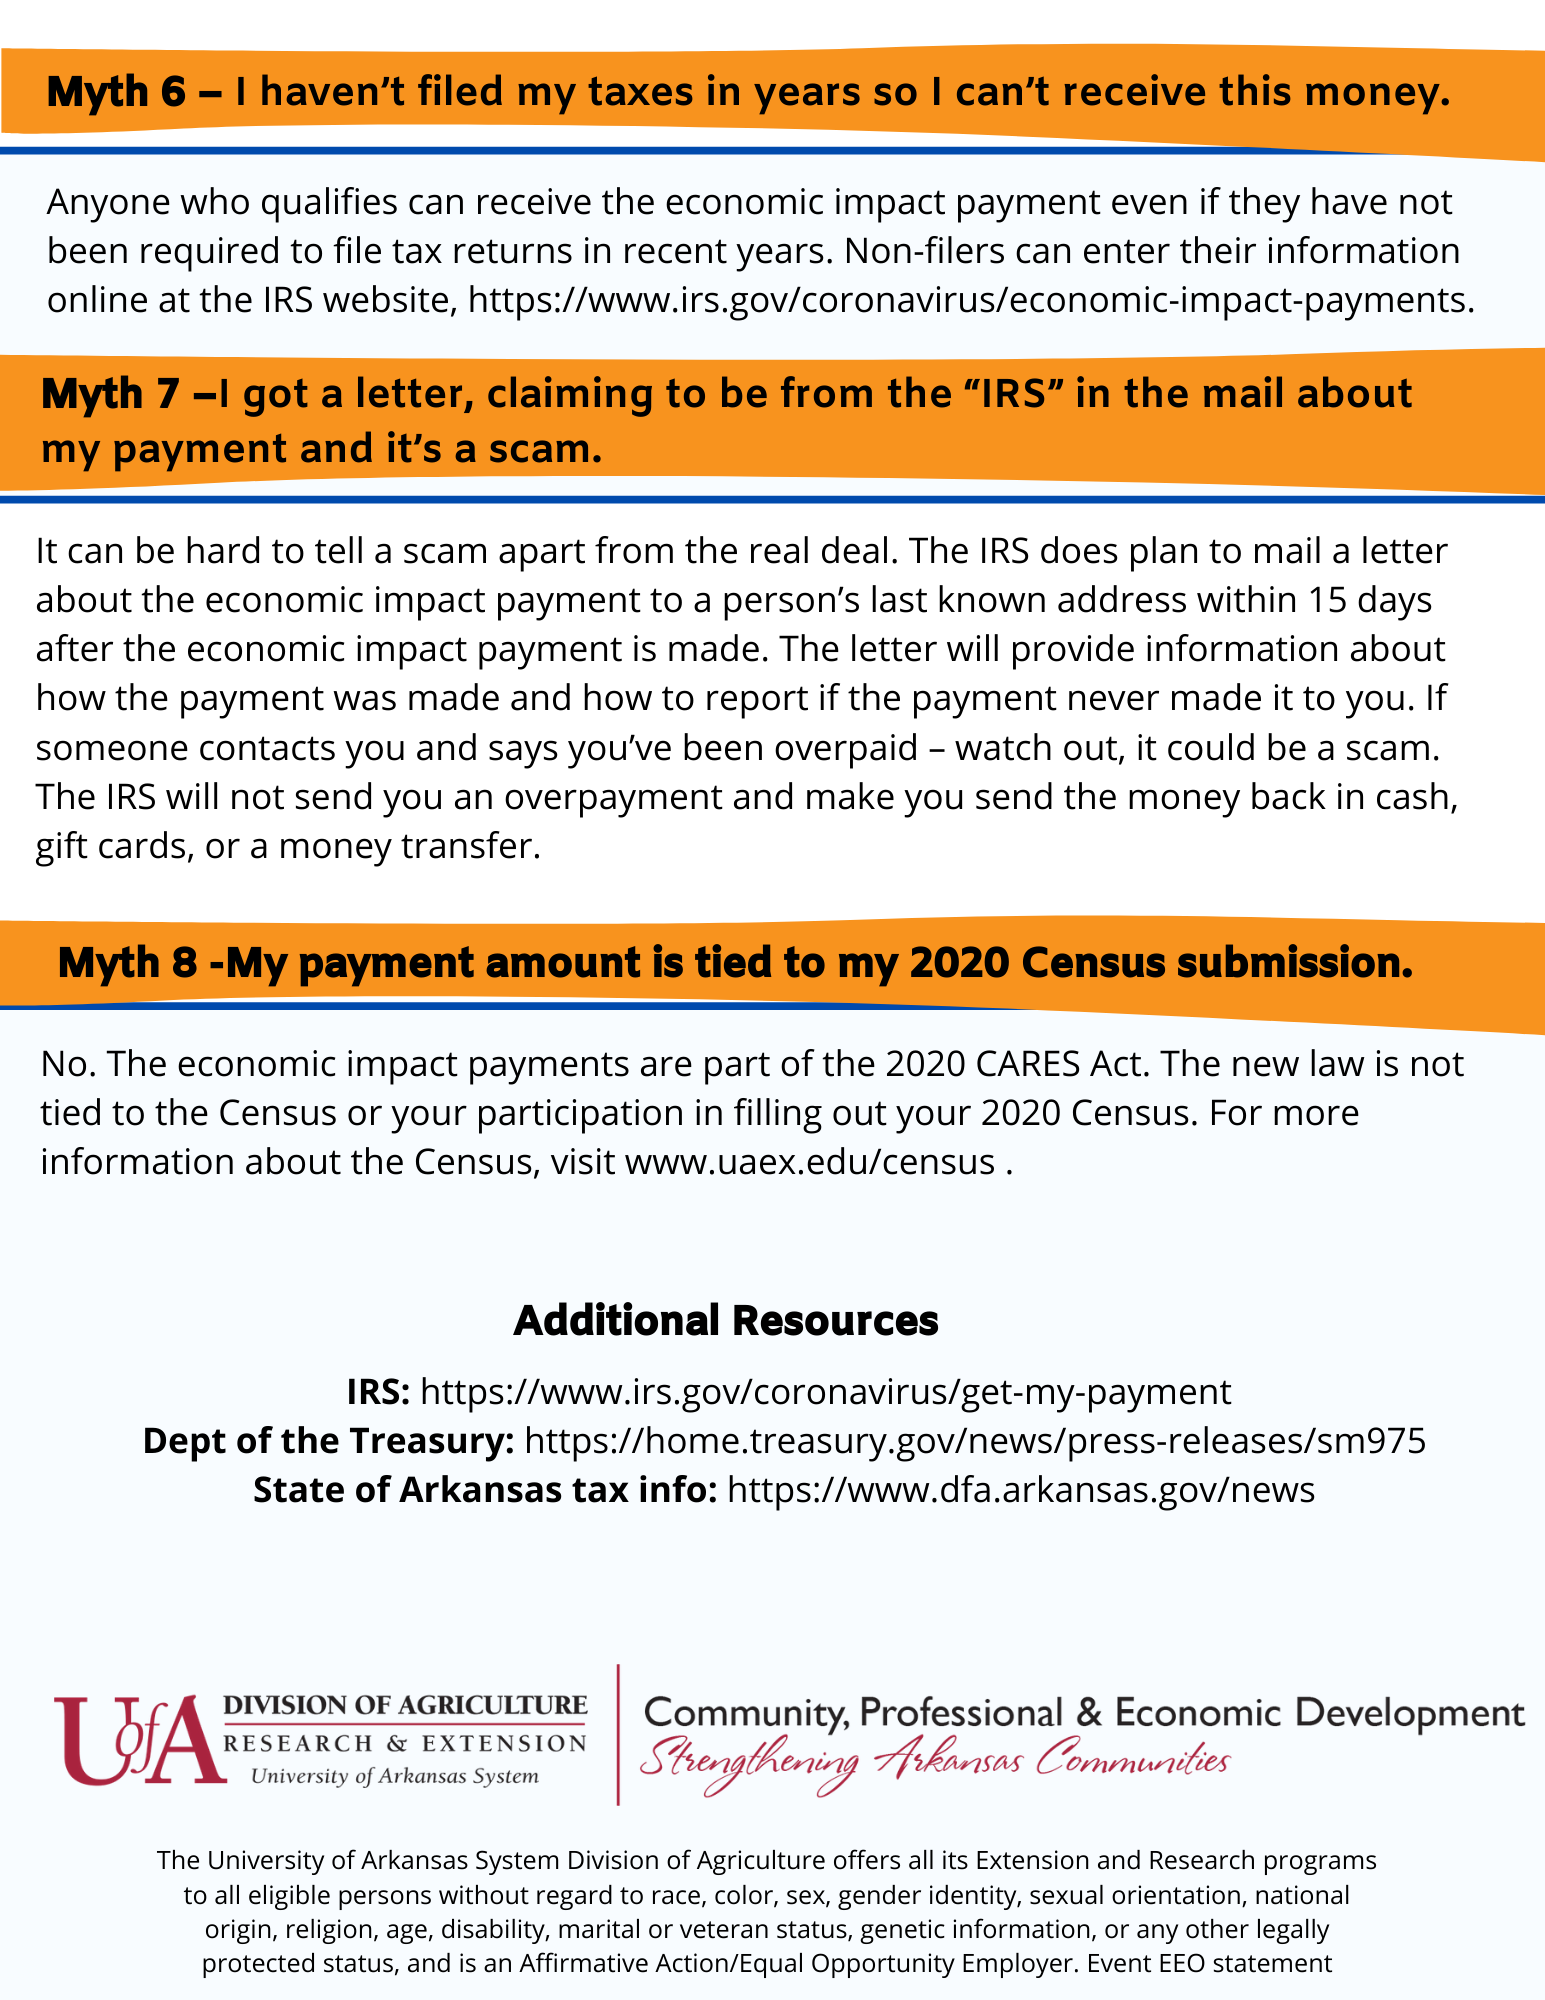 Economic Impact Payment Myths 6-8